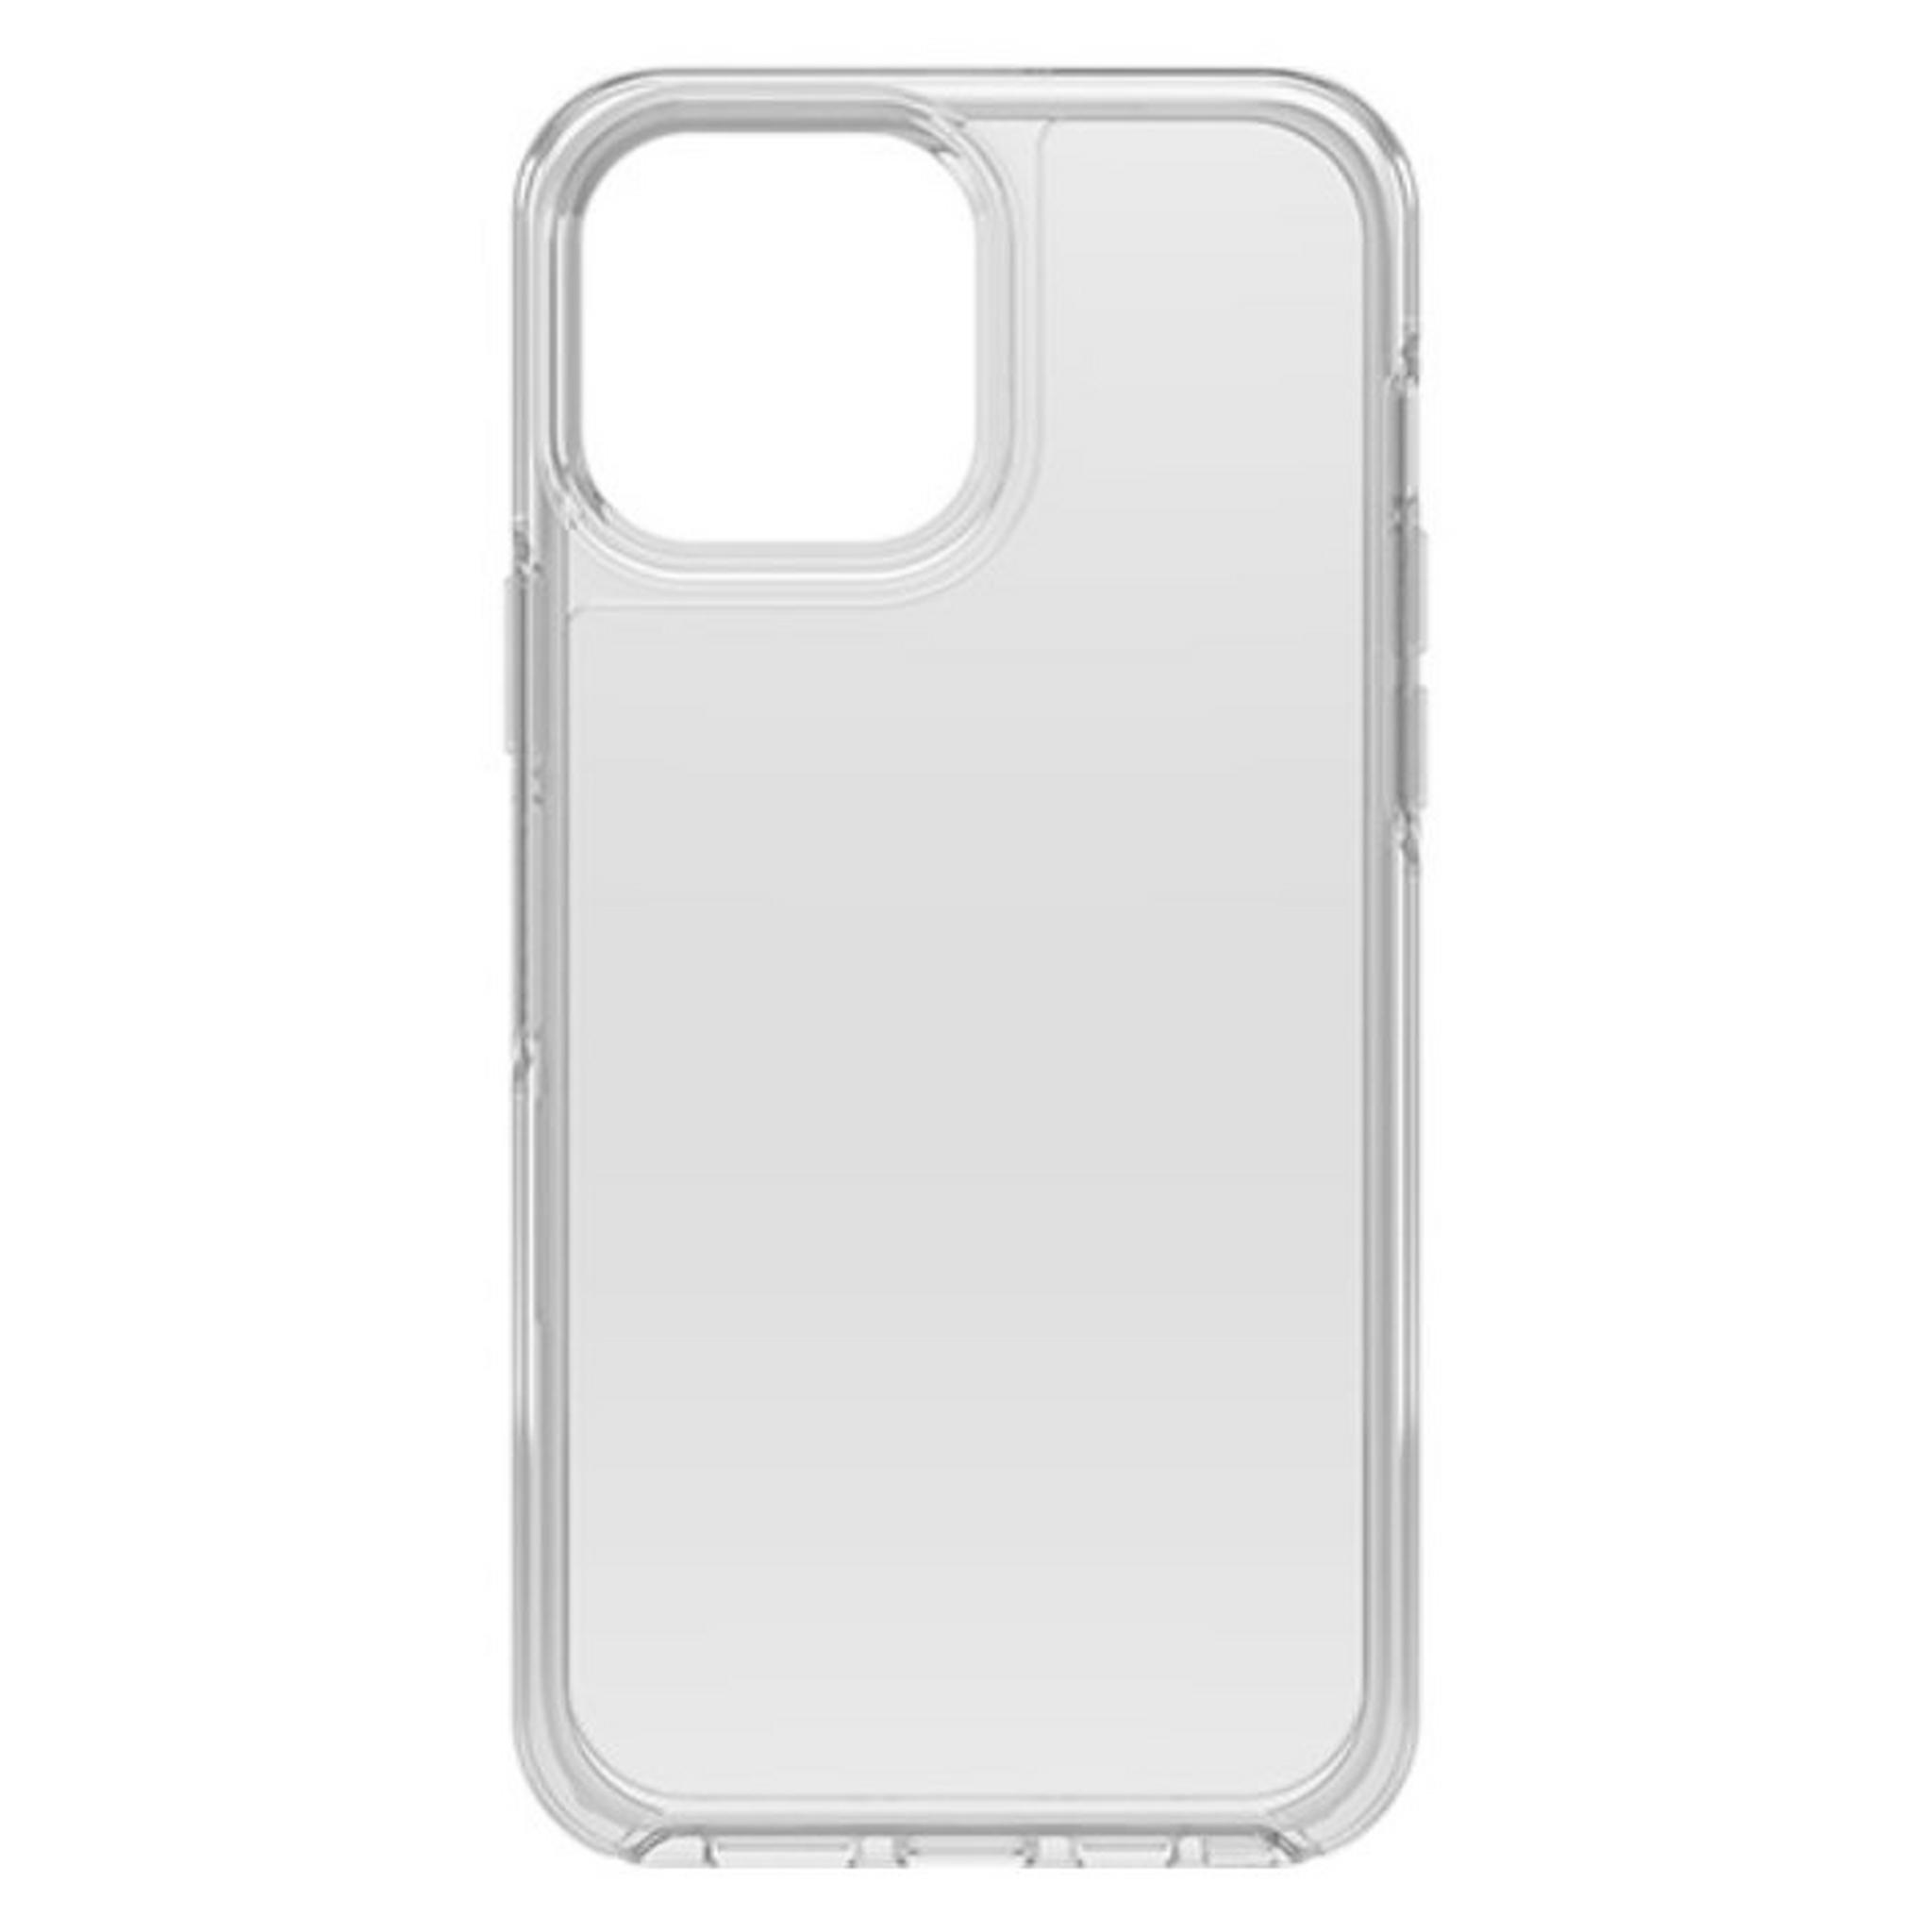 غطاء حماية سلسلة سميتري لهاتف ايفون 13 برو من اوتر بوكس - شفاف